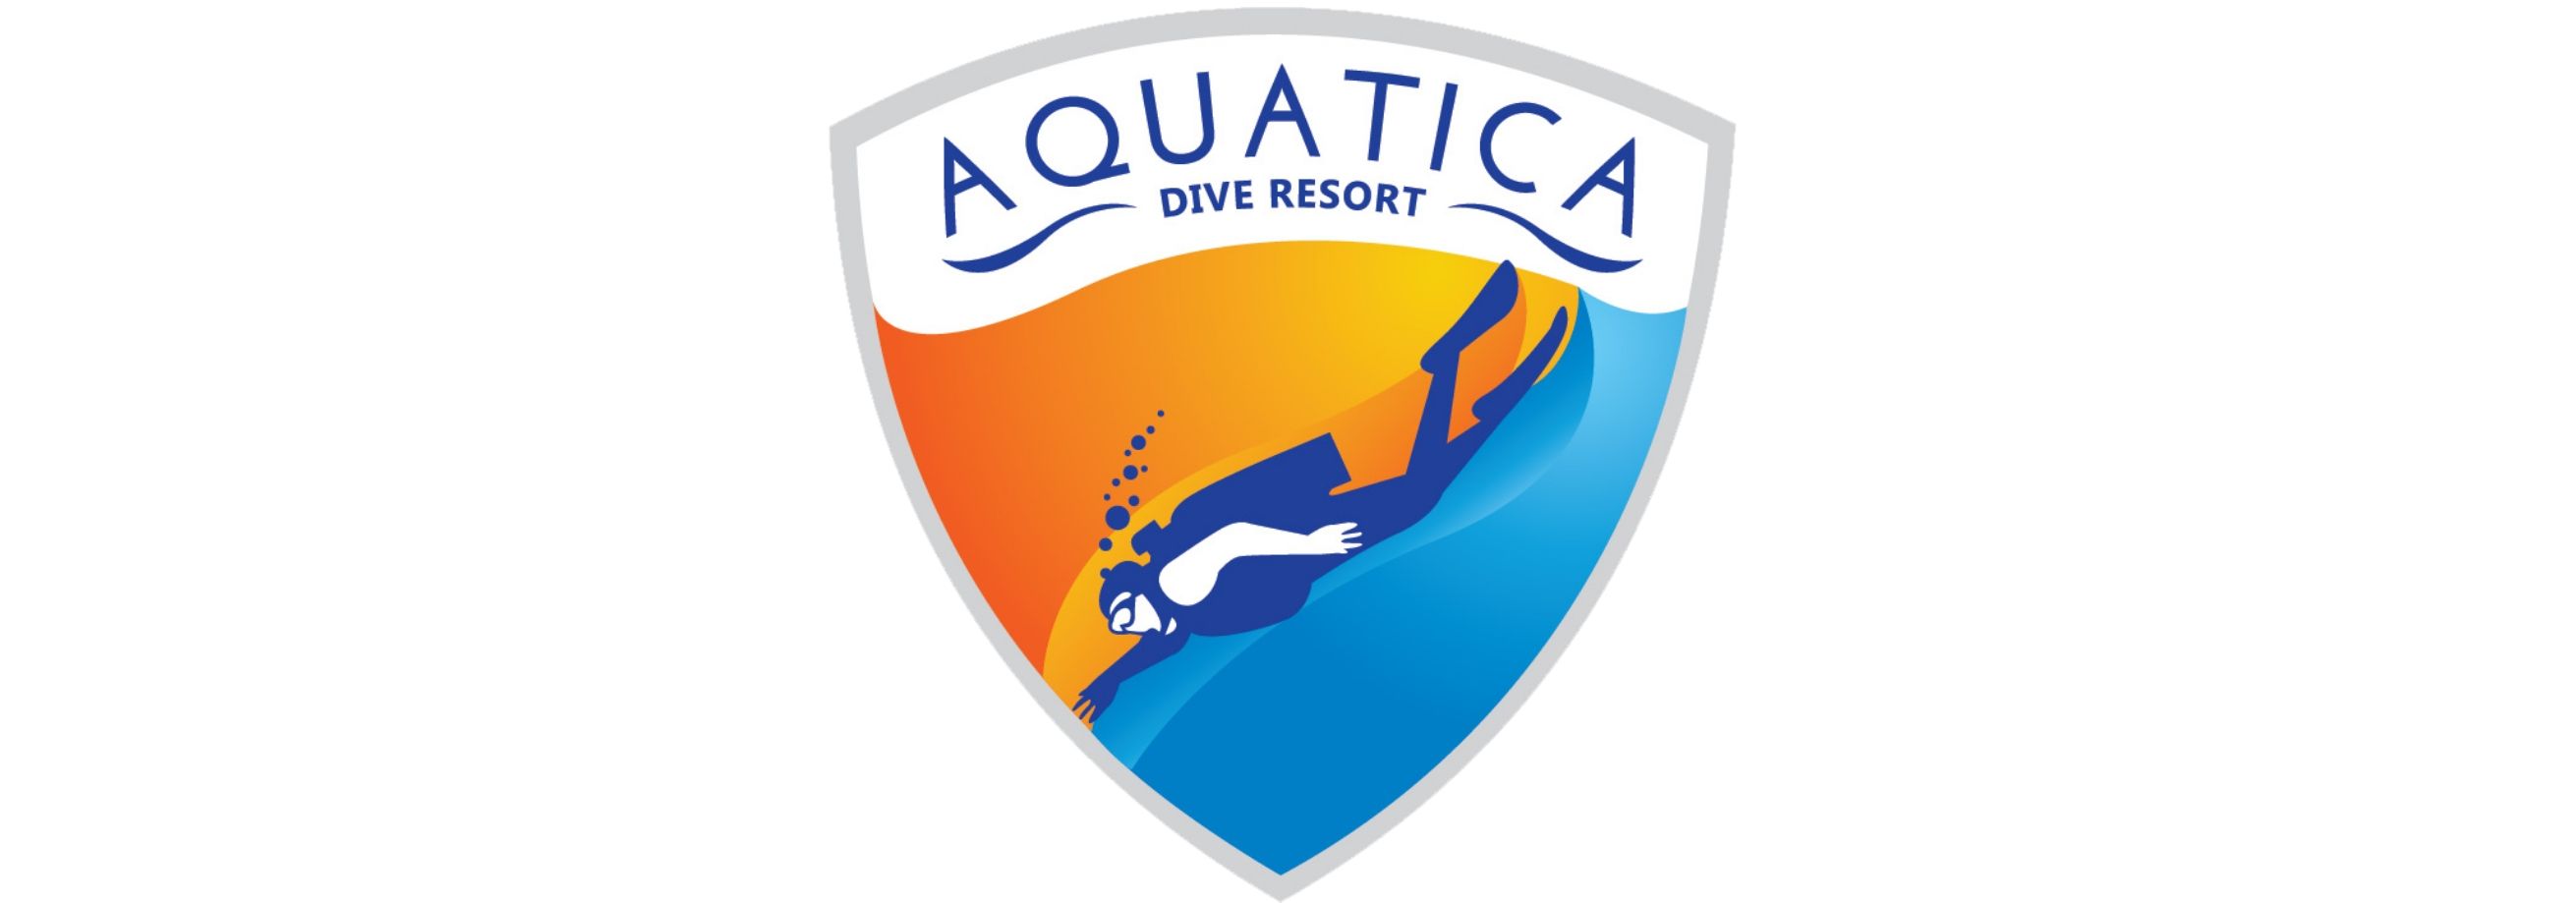 Aquatica Logo